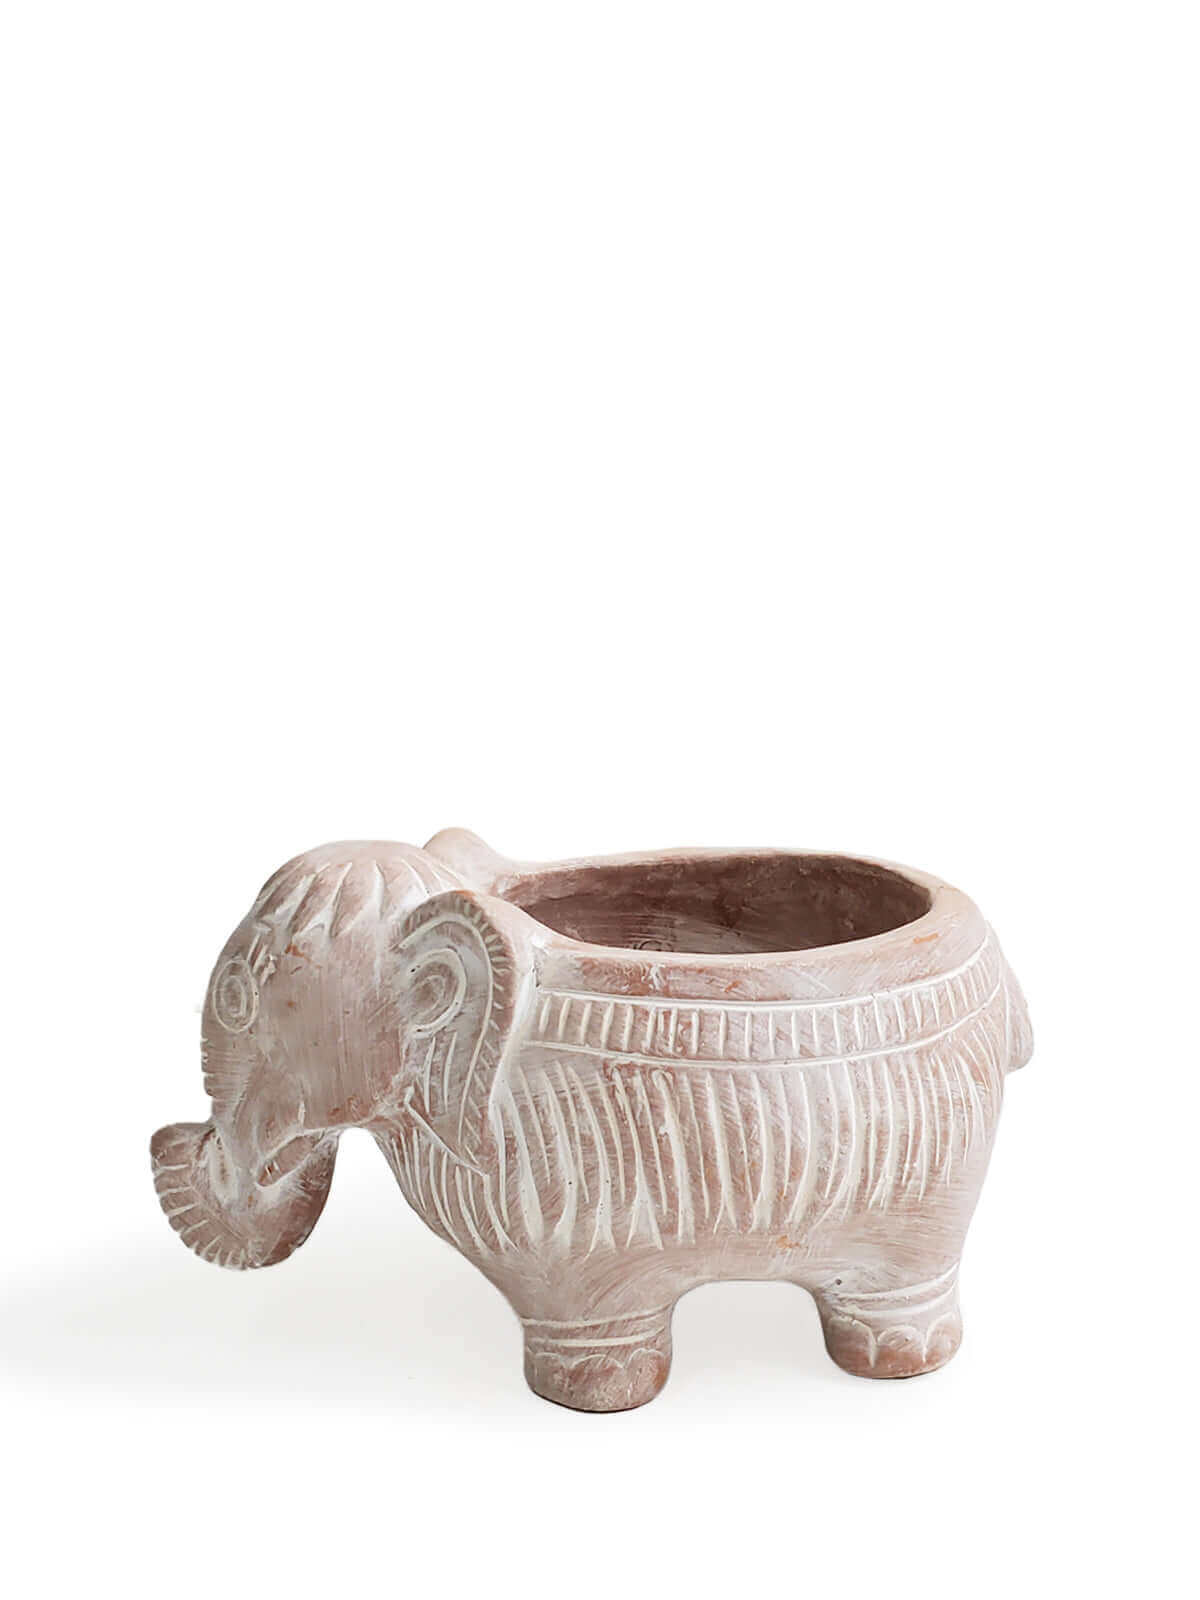 Terracotta Pot - Elephant-6